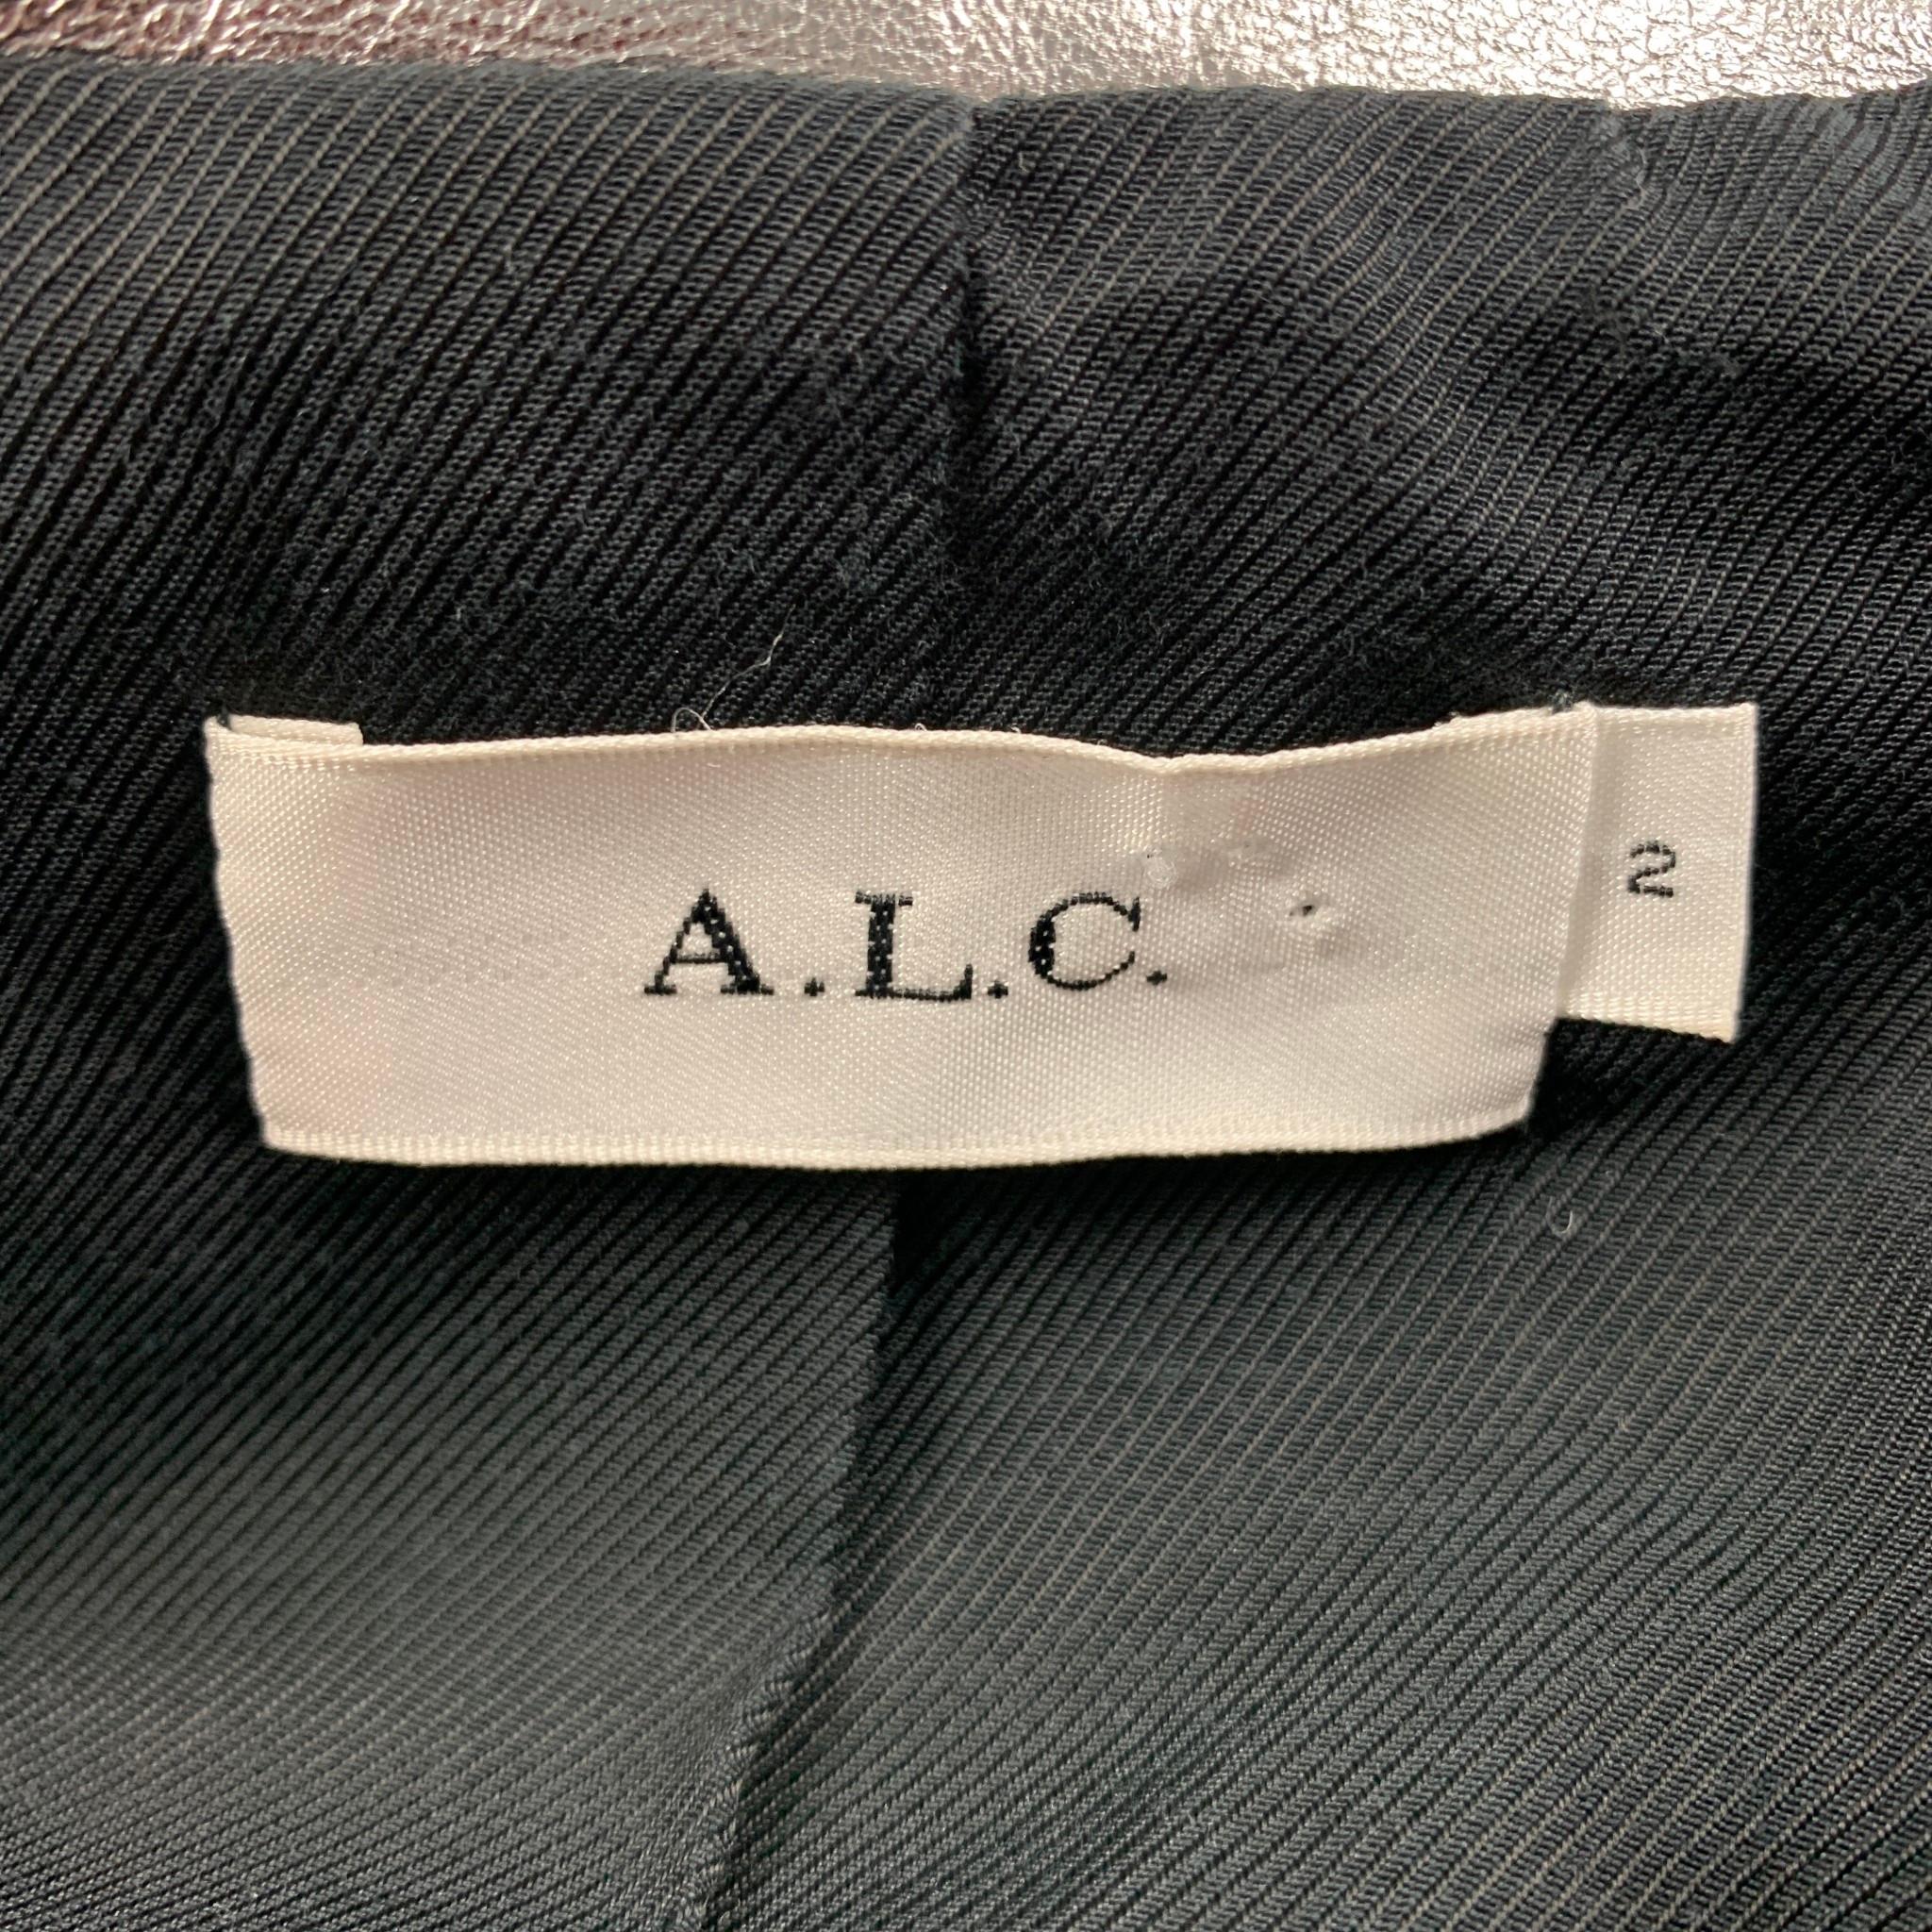 Women's A.L.C. Size S Silver Metallic Leather Biker Jacket